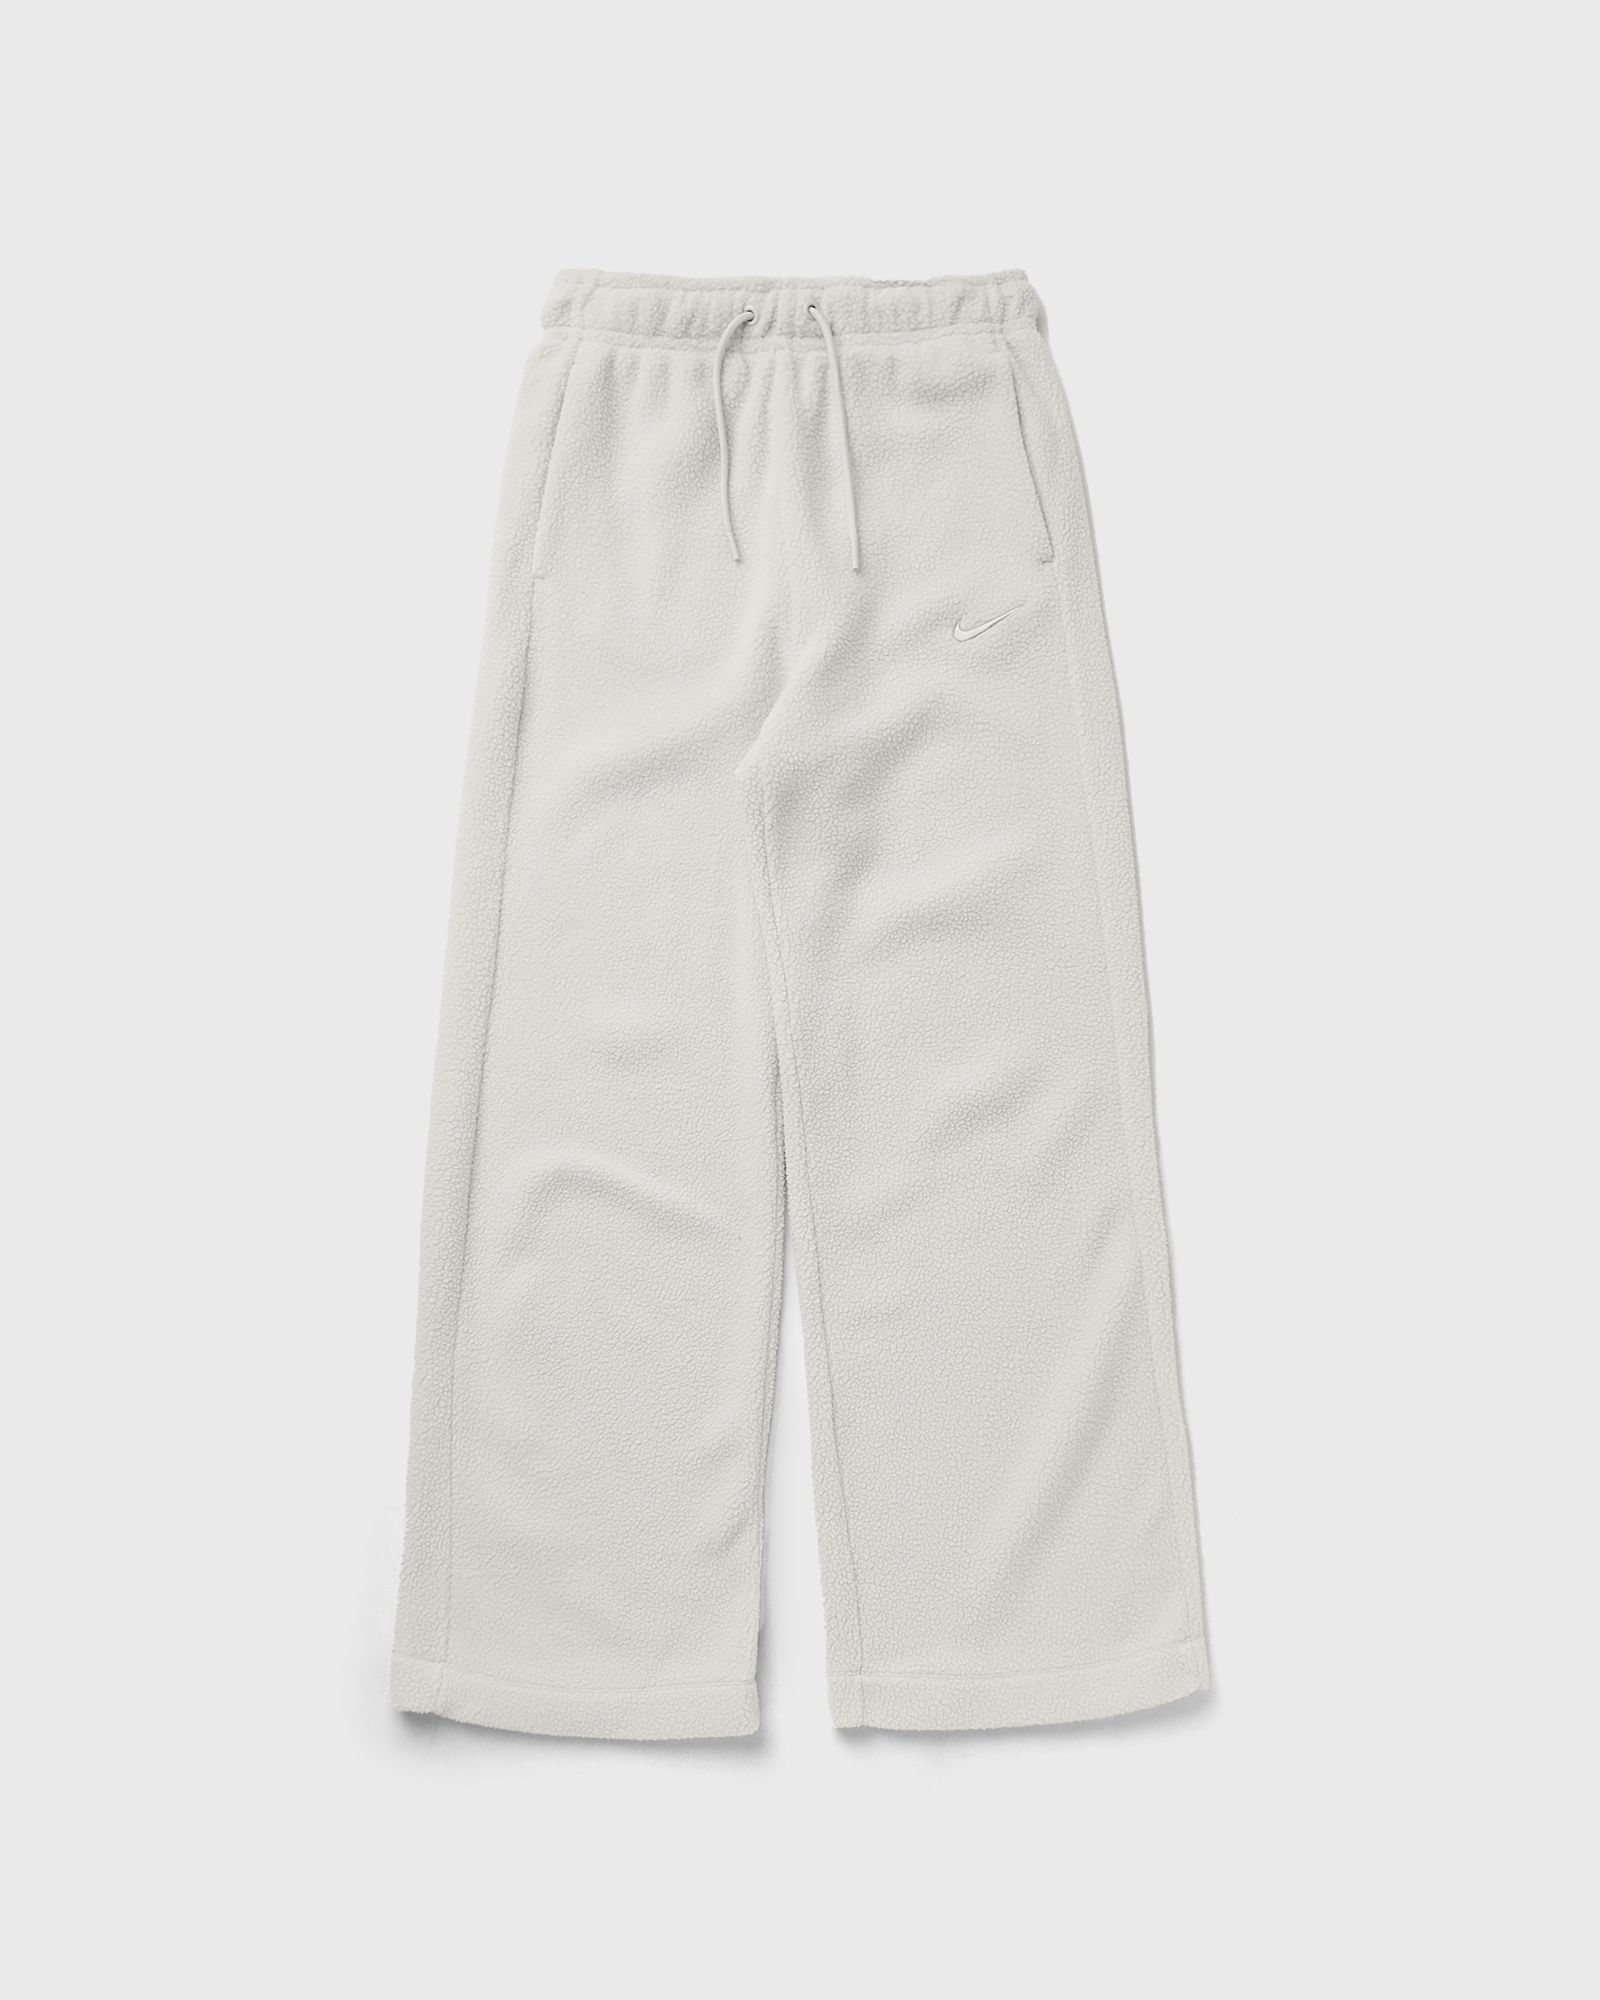 Nike - wmns plush pants women sweatpants beige in größe:m